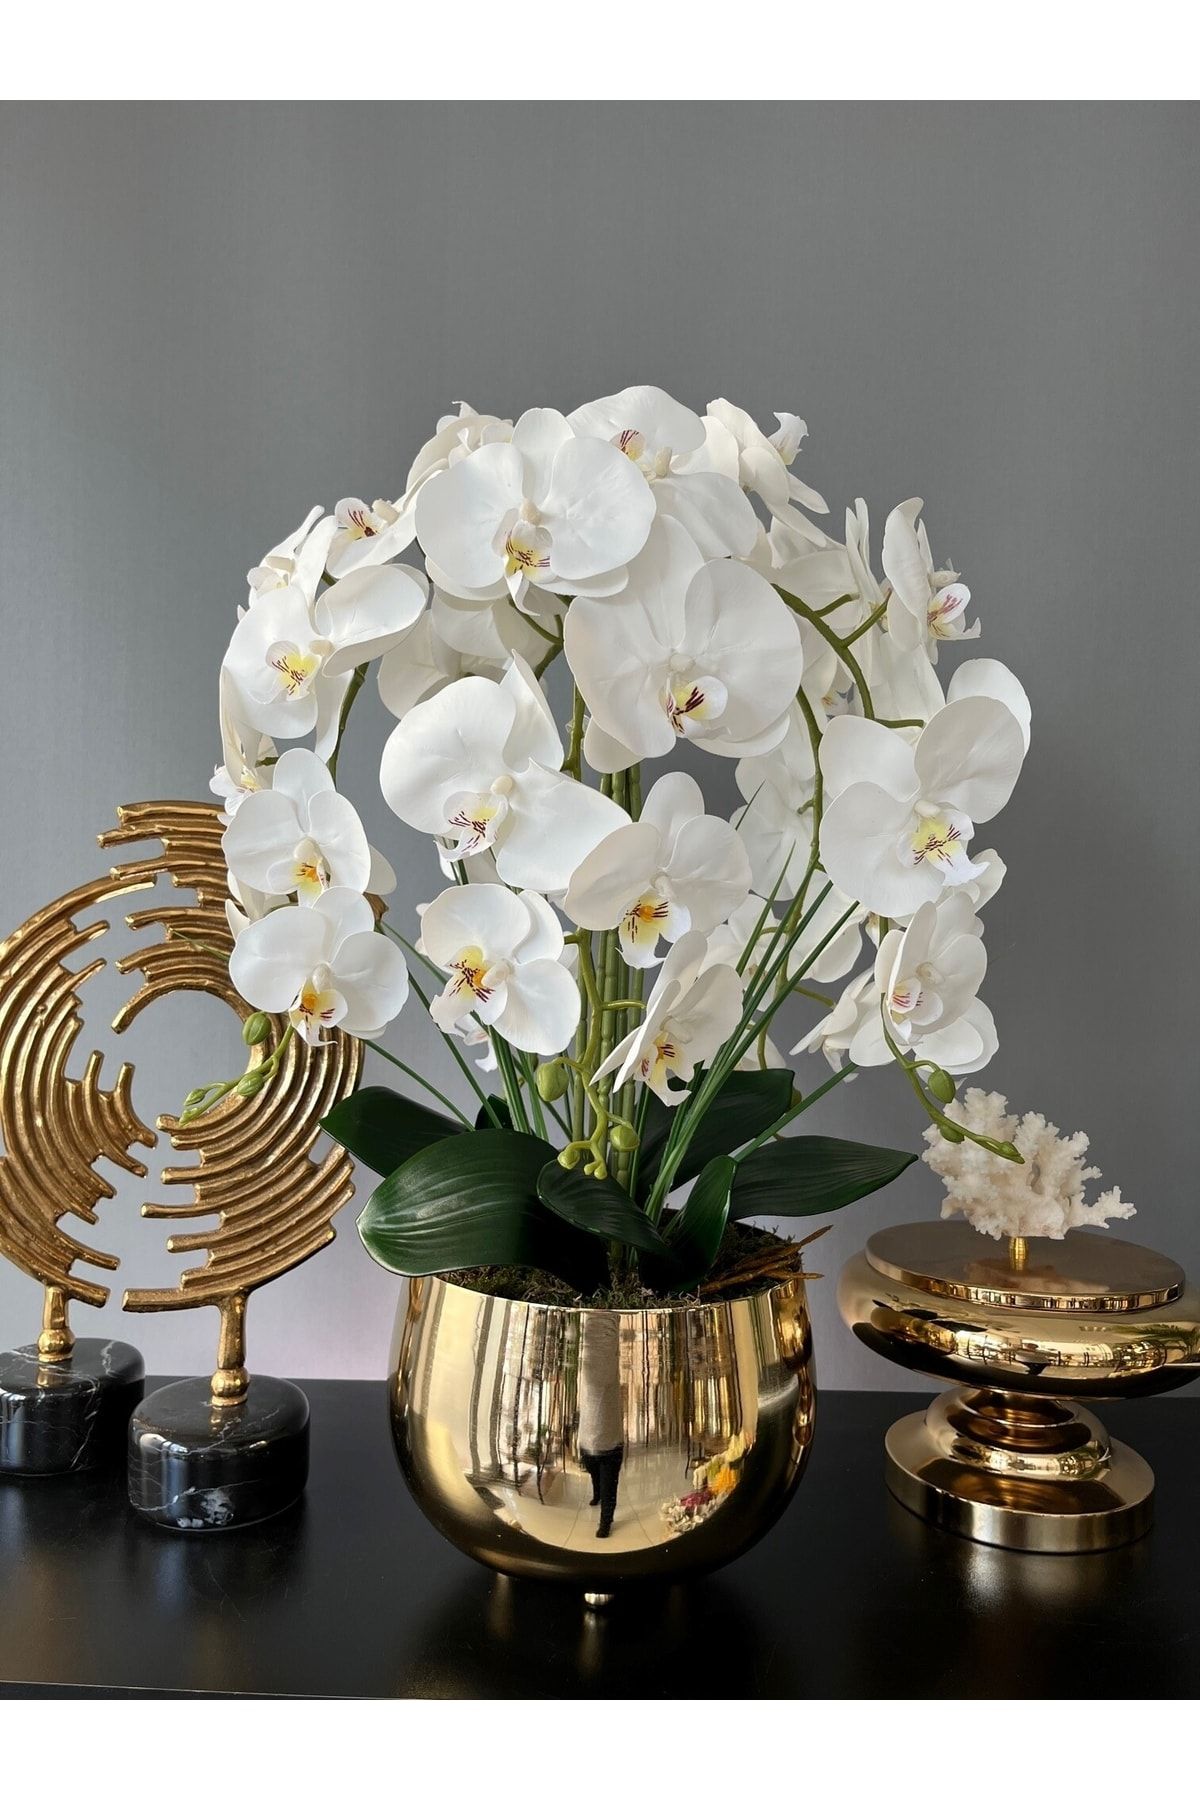 LİLOTEHOME 6 Dal Luxury Islak Beyaz Orkide Aranjman Japon Model Parlak Gold Renk Saksı